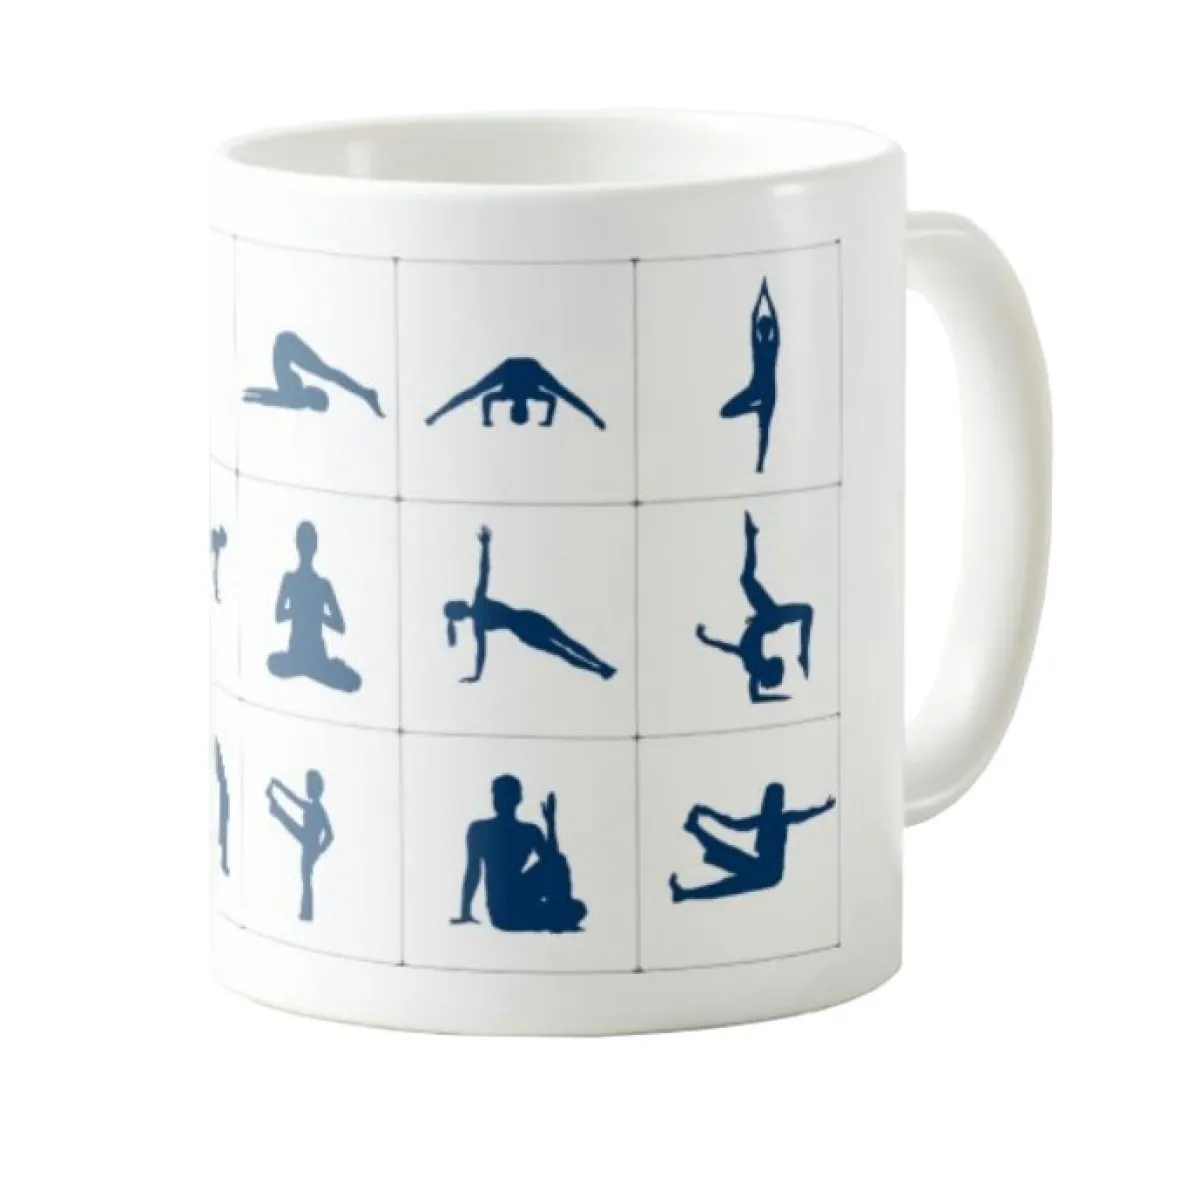 Mug - Coffee mug - Cup yoga exercises